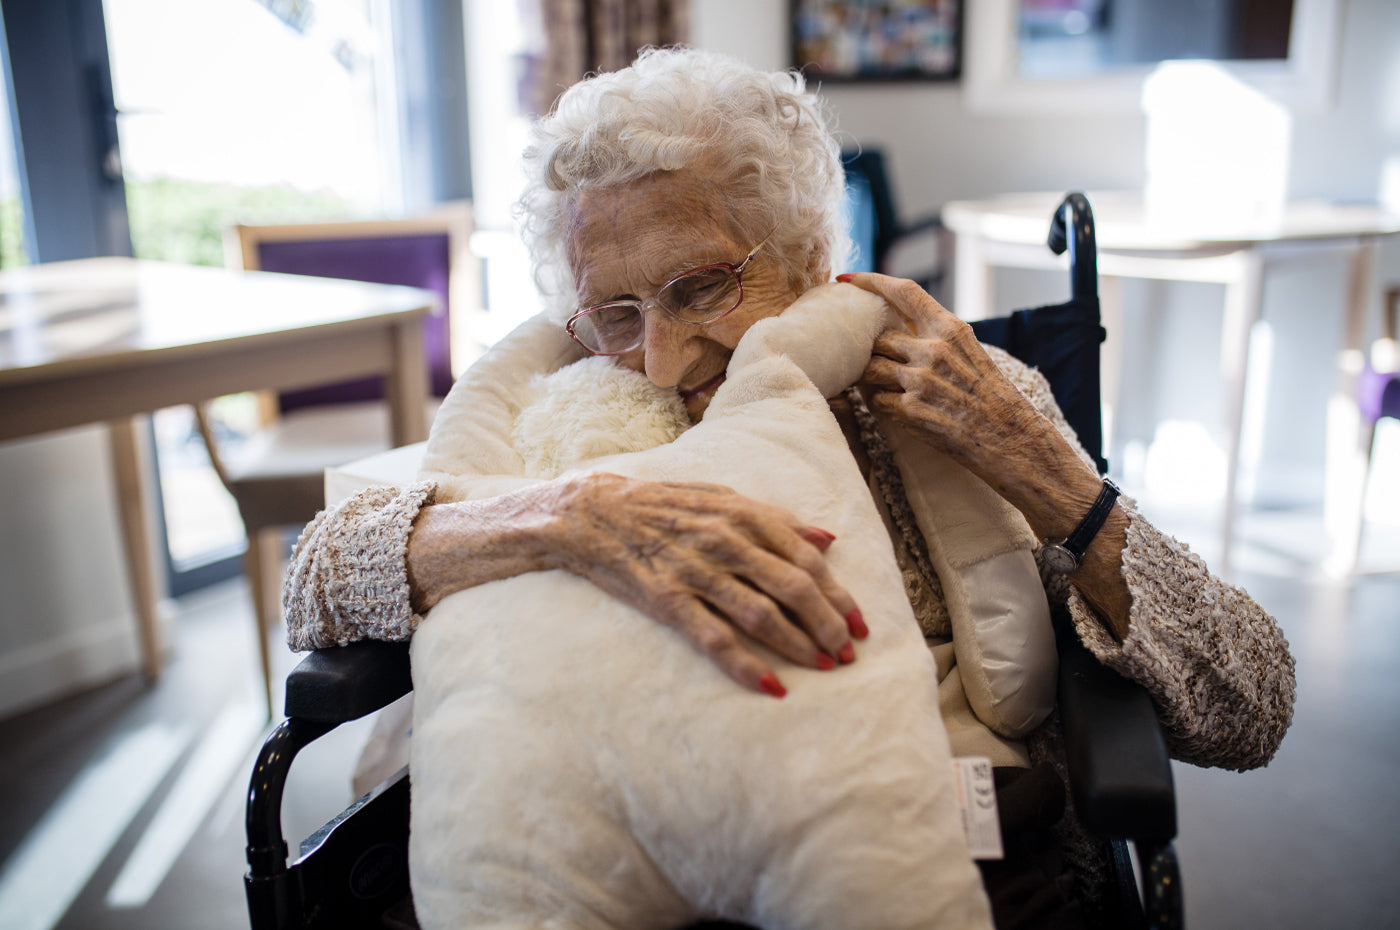 Hug for dementia patients